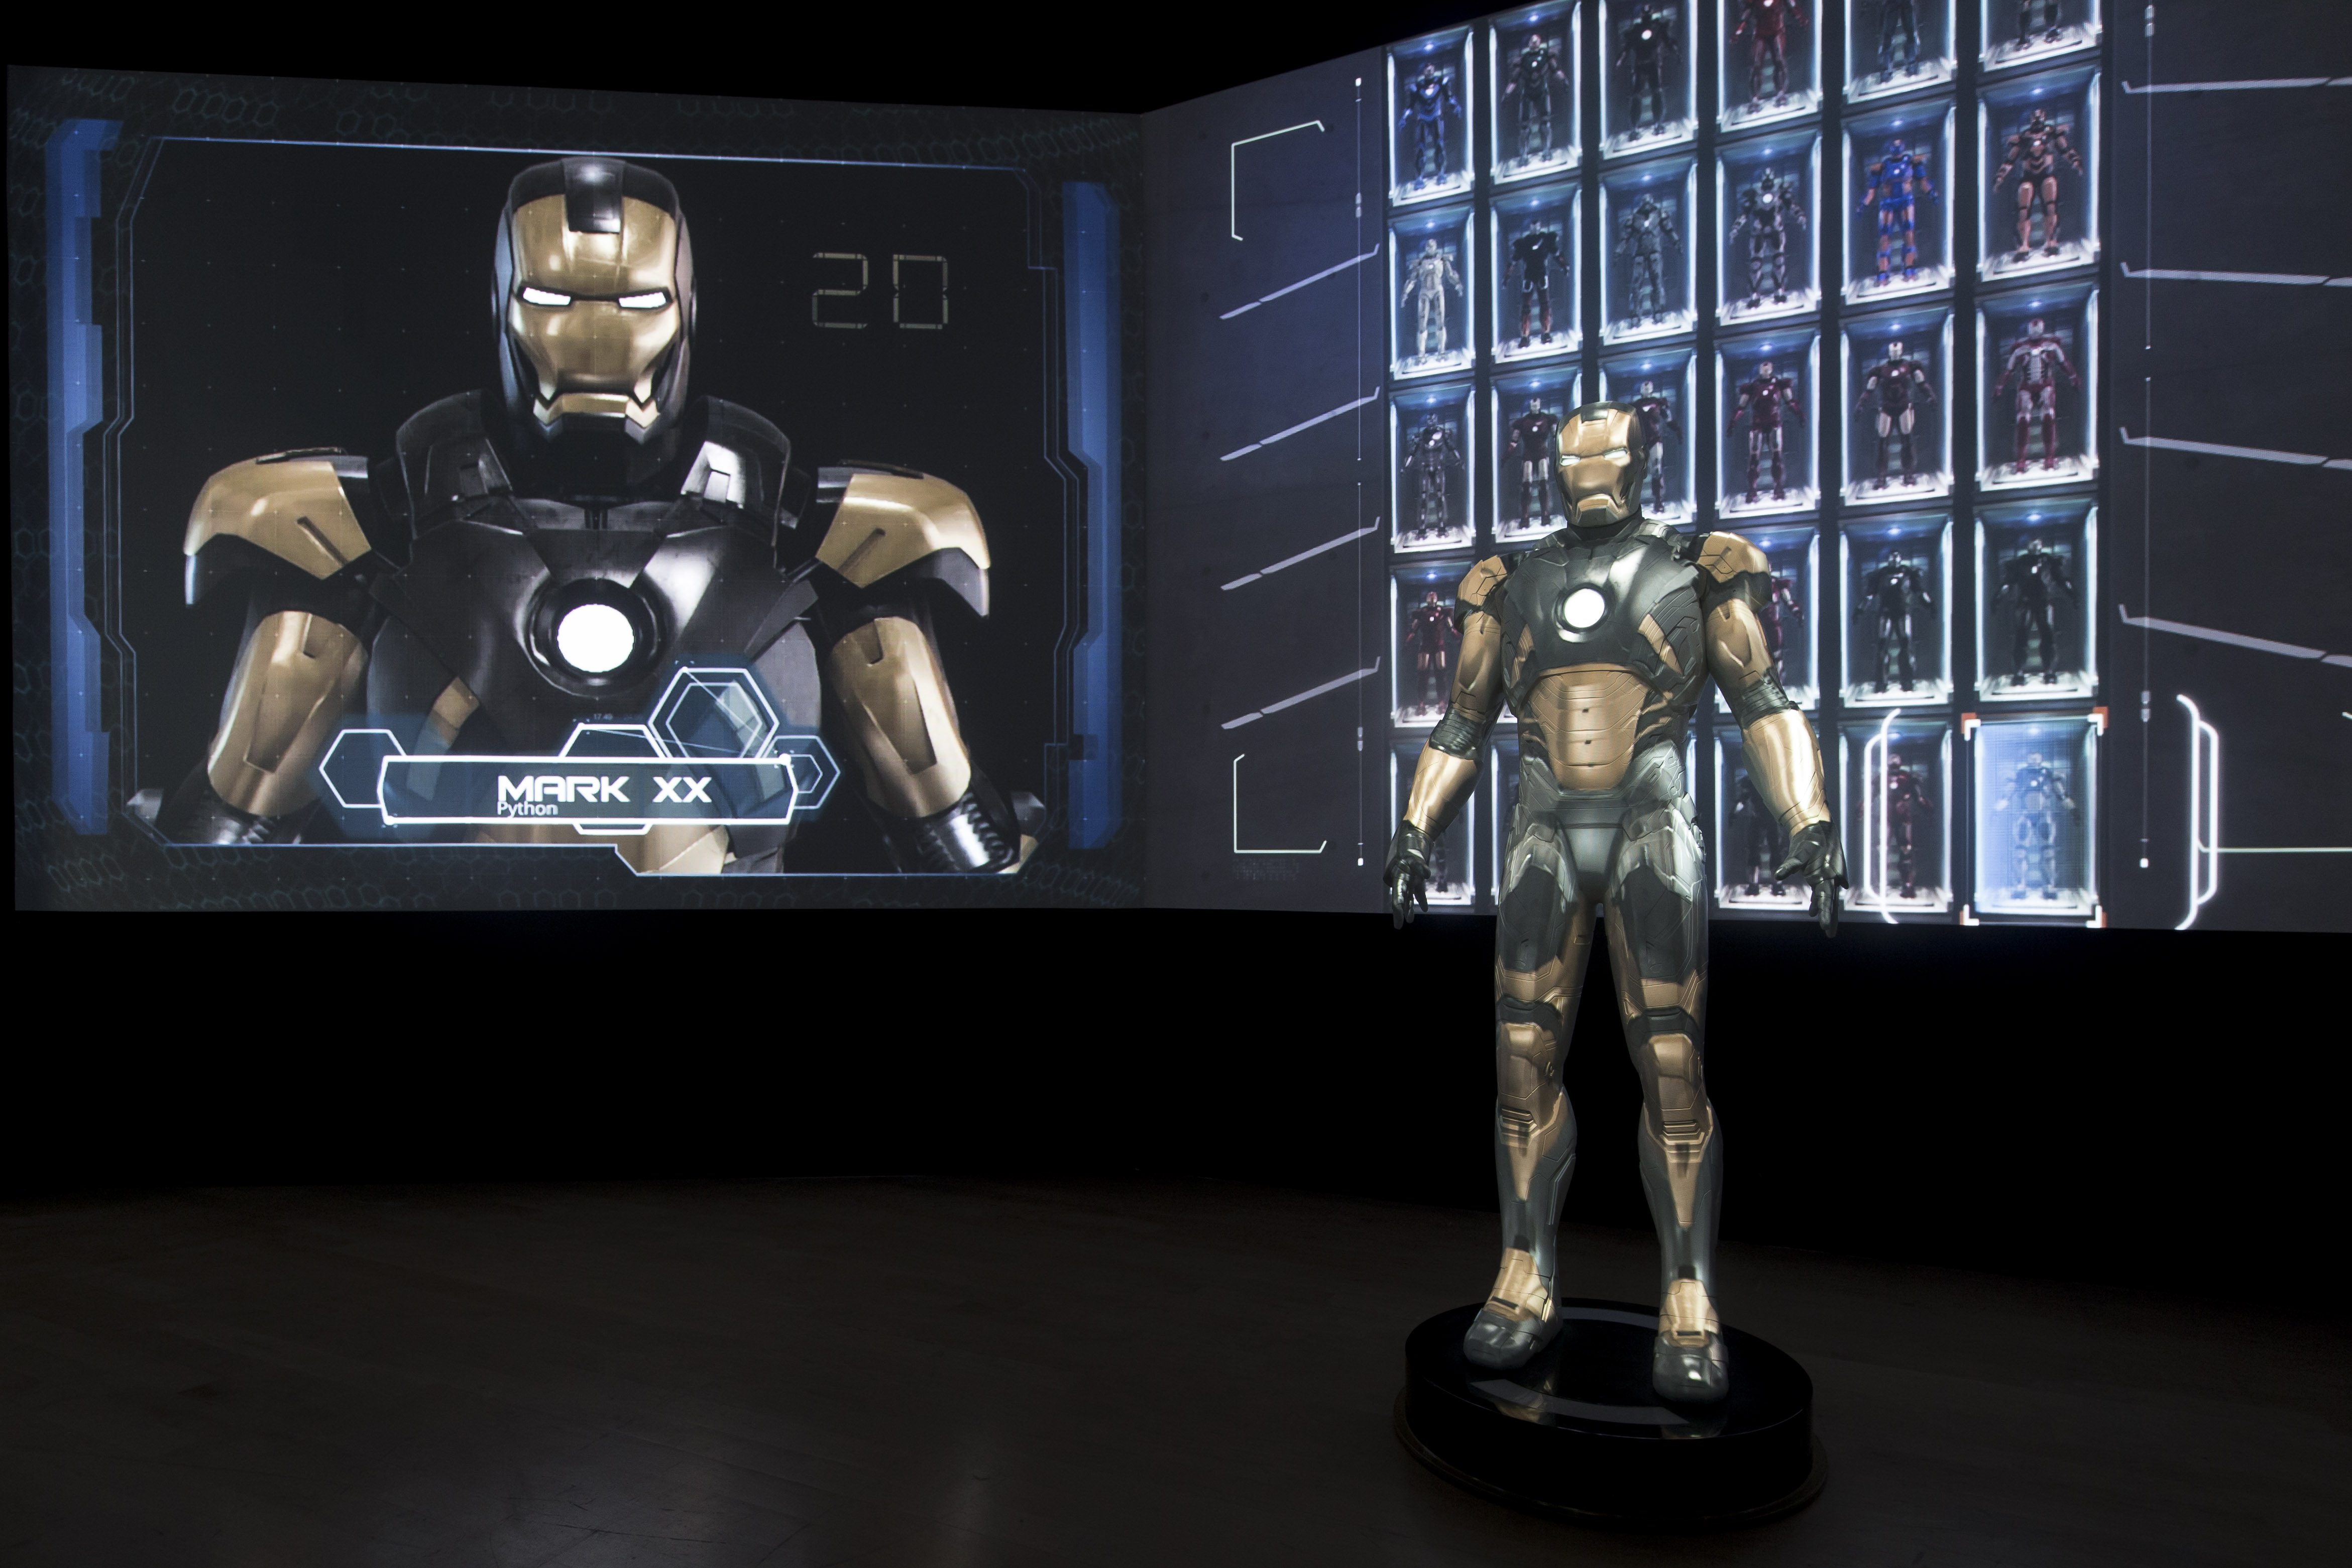 Iron Man's armours. (ArtScience Museum)